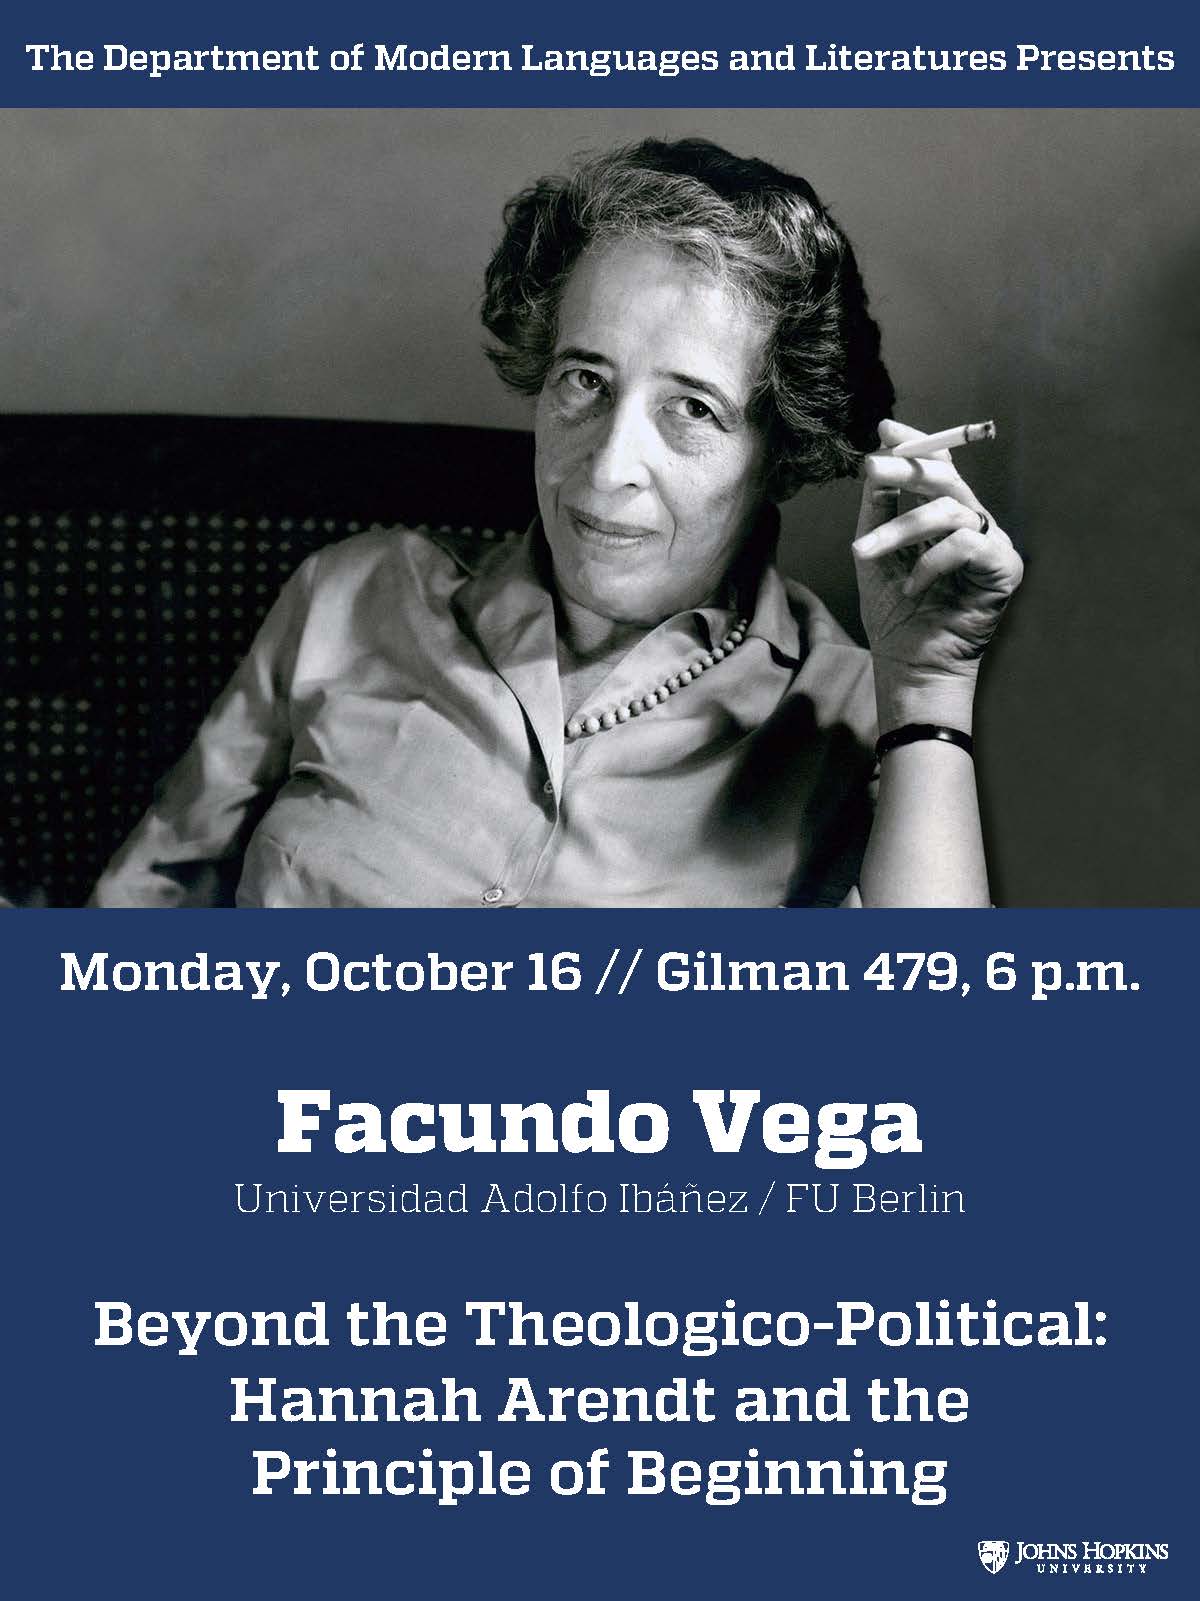 Facundo Vega lecture flyer